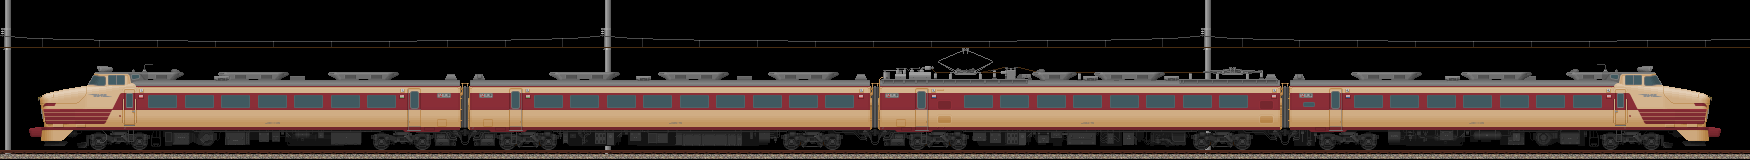 485系特急形電車･初期型(2012/1/7更新)